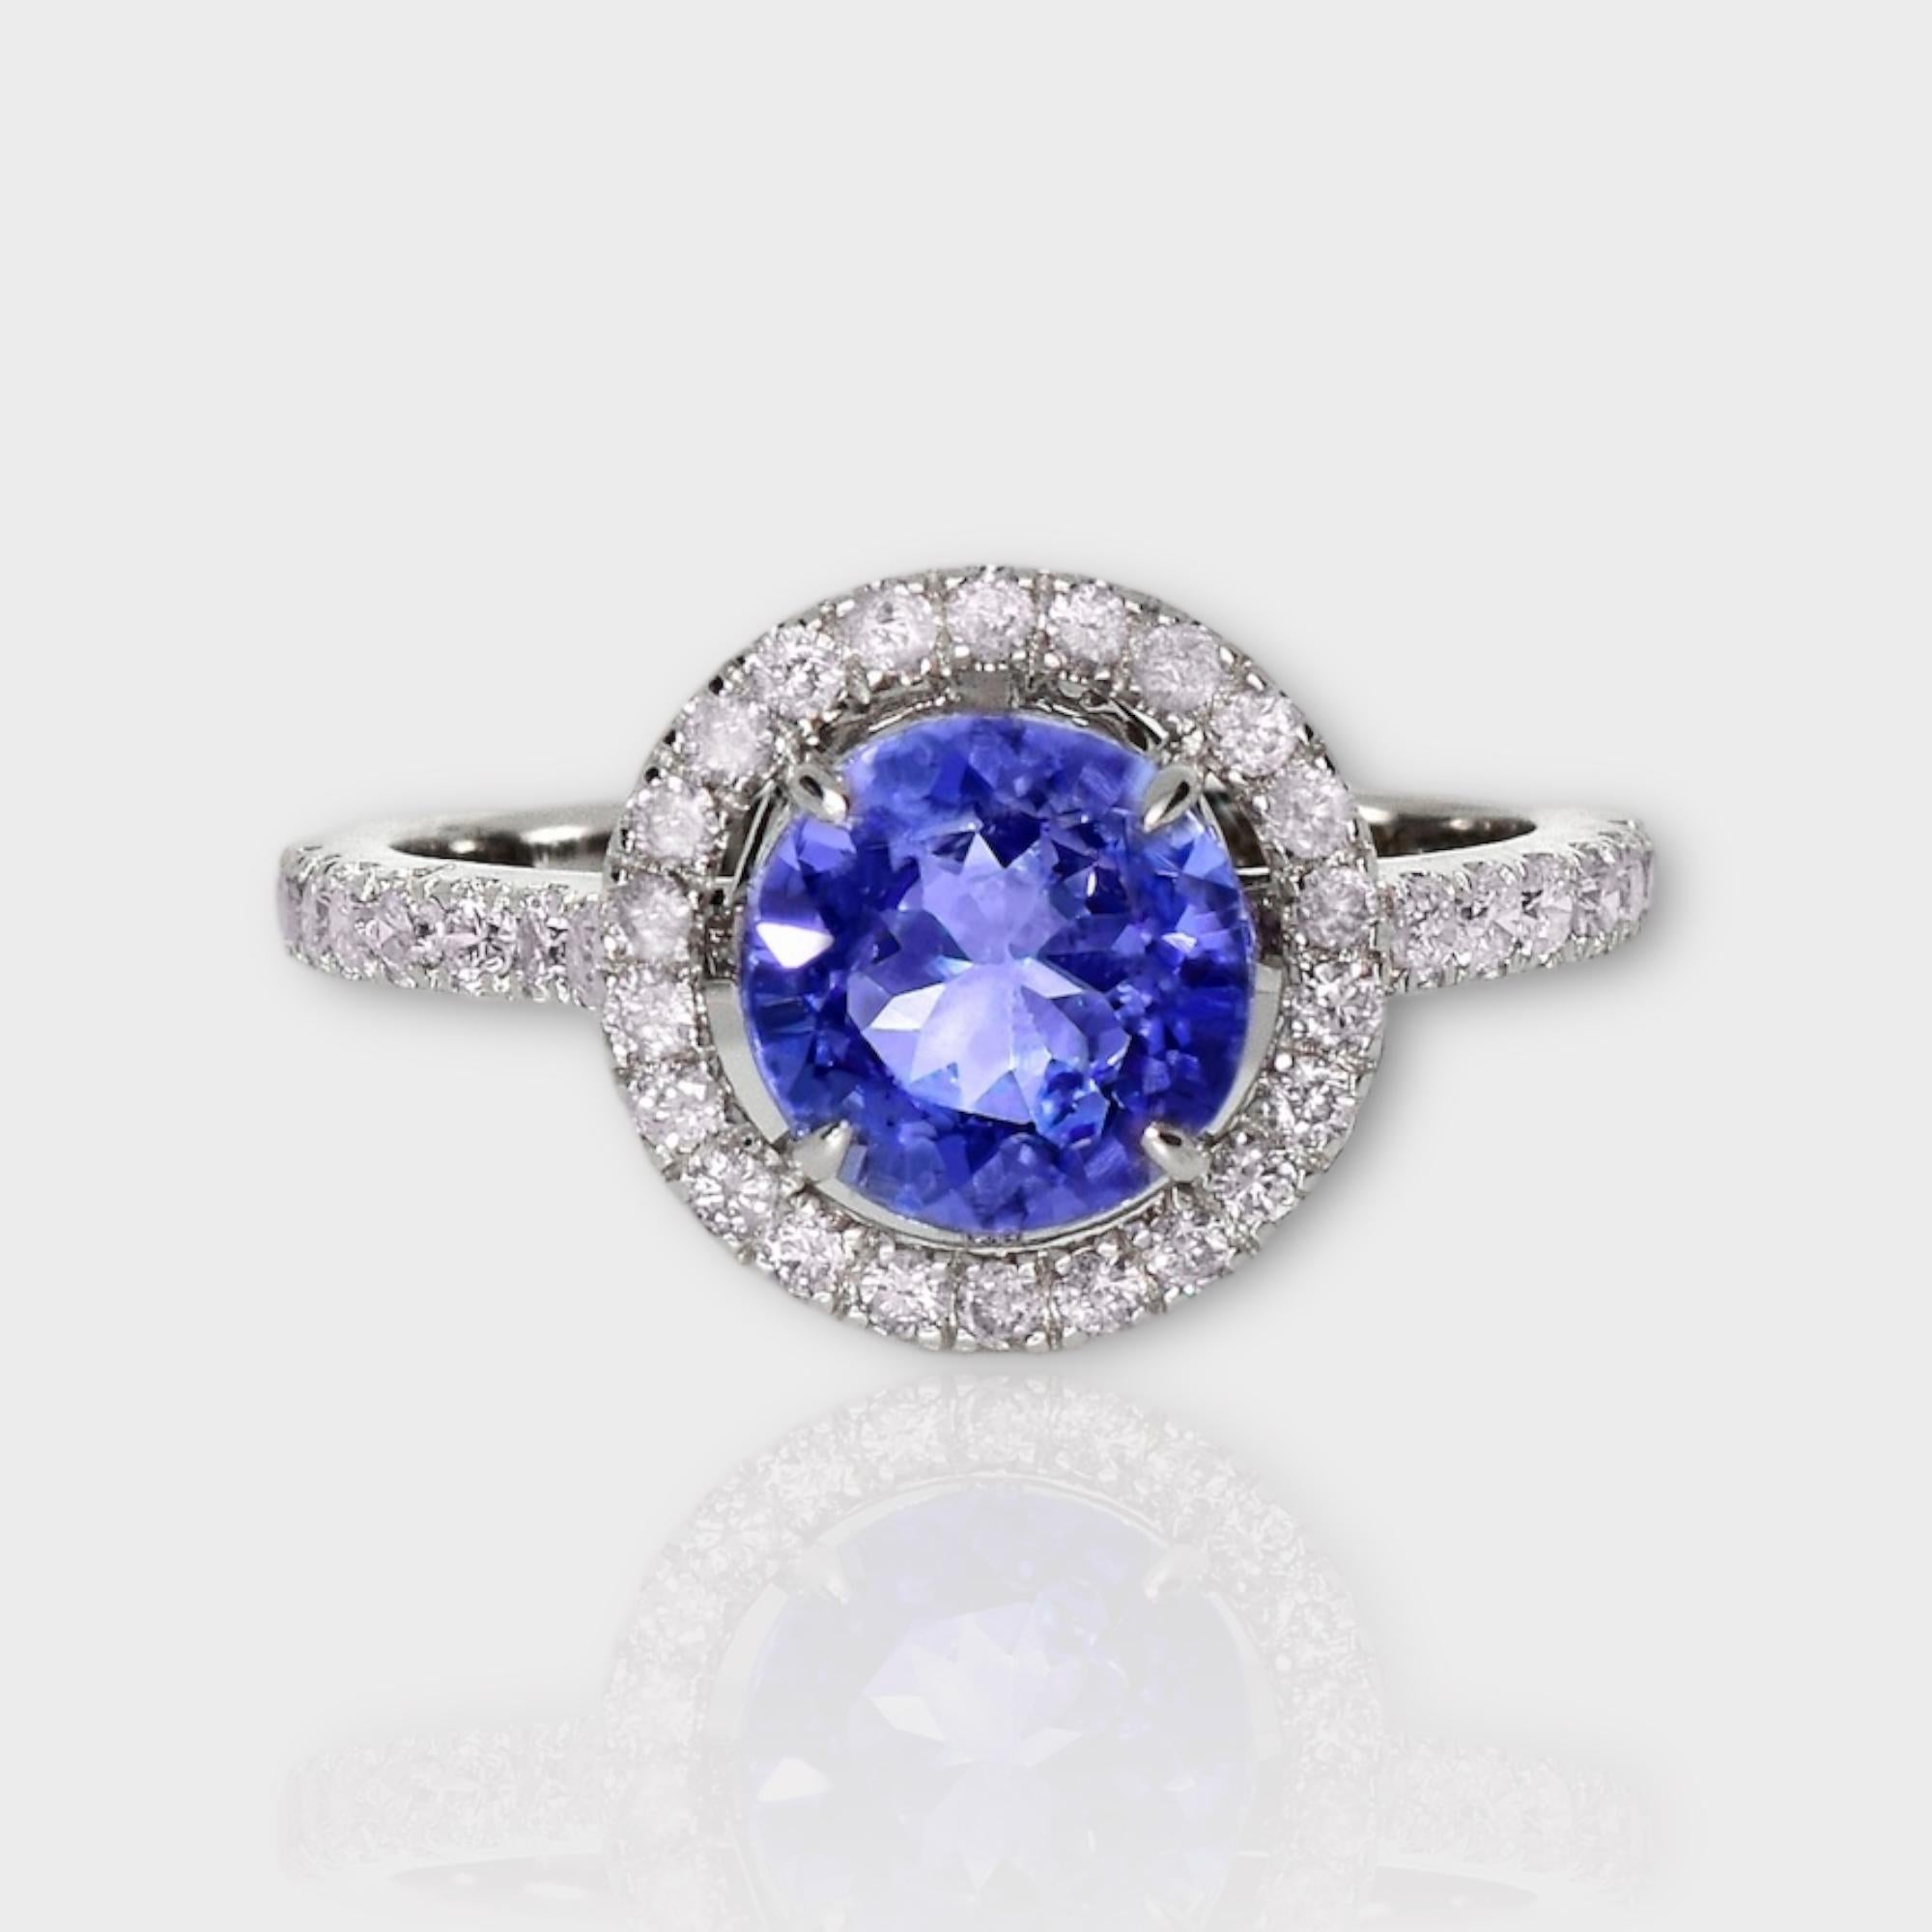 *IGI 14K 1.81 ct Tansanit&Rosa Diamant Antiker Art Deco Stil Verlobungsring*
Der natürliche, intensiv bläulich-violette Tansanit mit einem Gewicht von 1,81 ct ist der Mittelstein, umgeben von natürlichen, rosafarbenen Diamanten mit einem Gewicht von